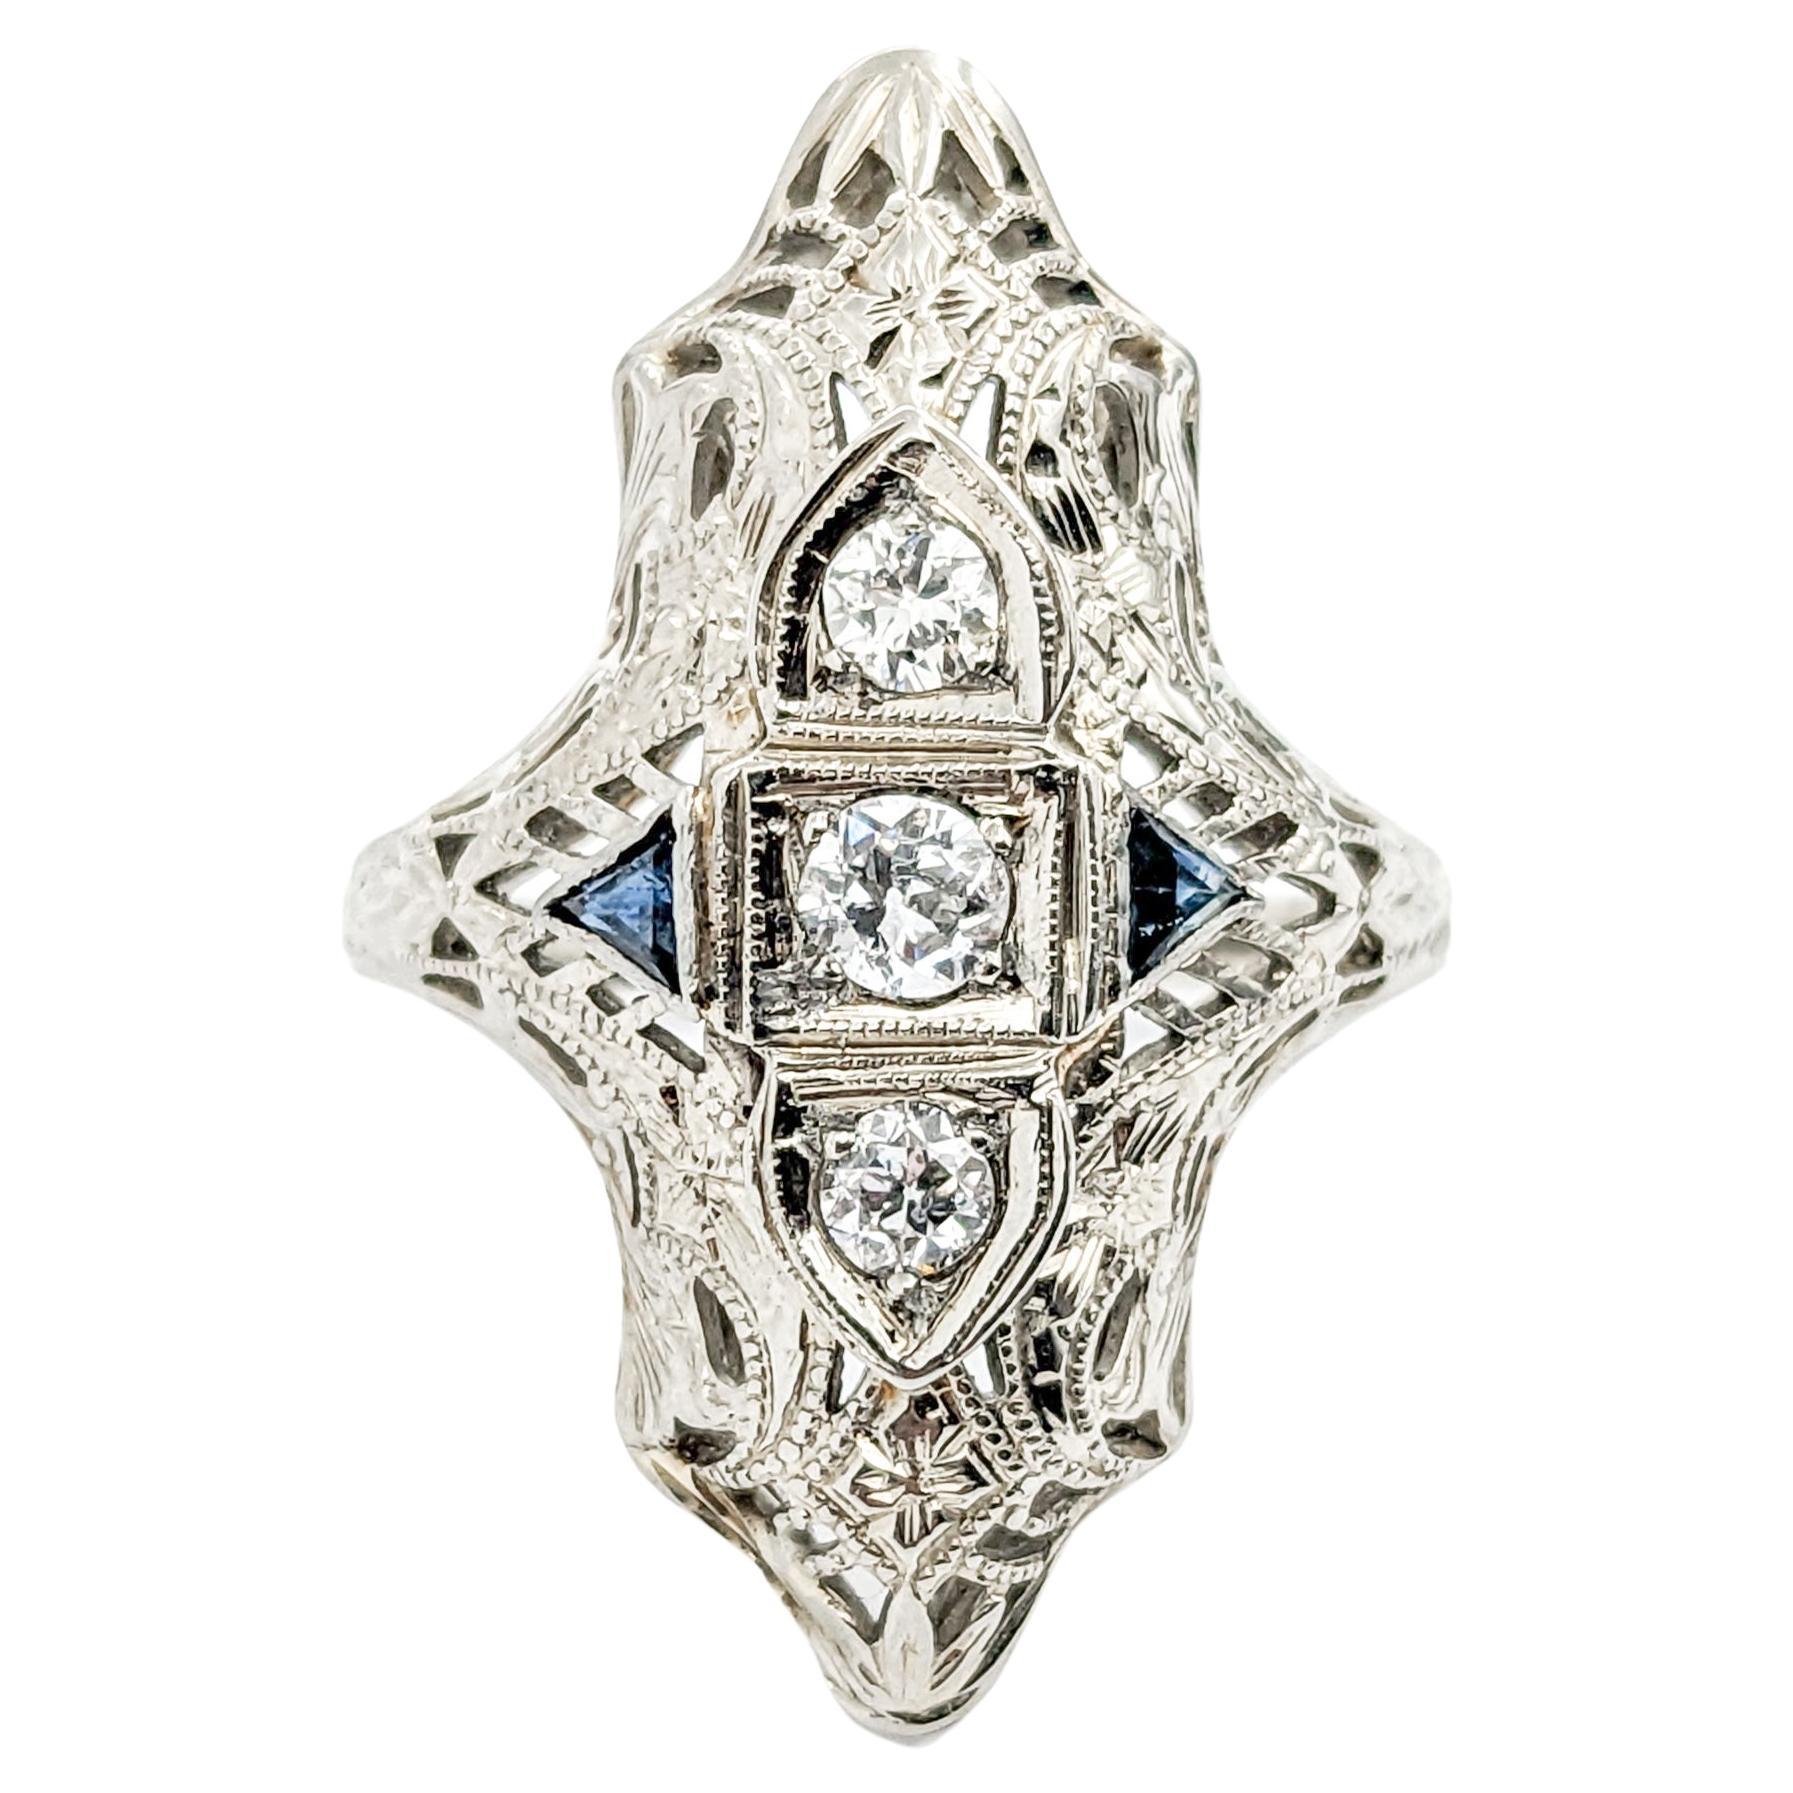 Antique Art Deco Era Diamond & Sapphire Shield Ring In White Gold For Sale